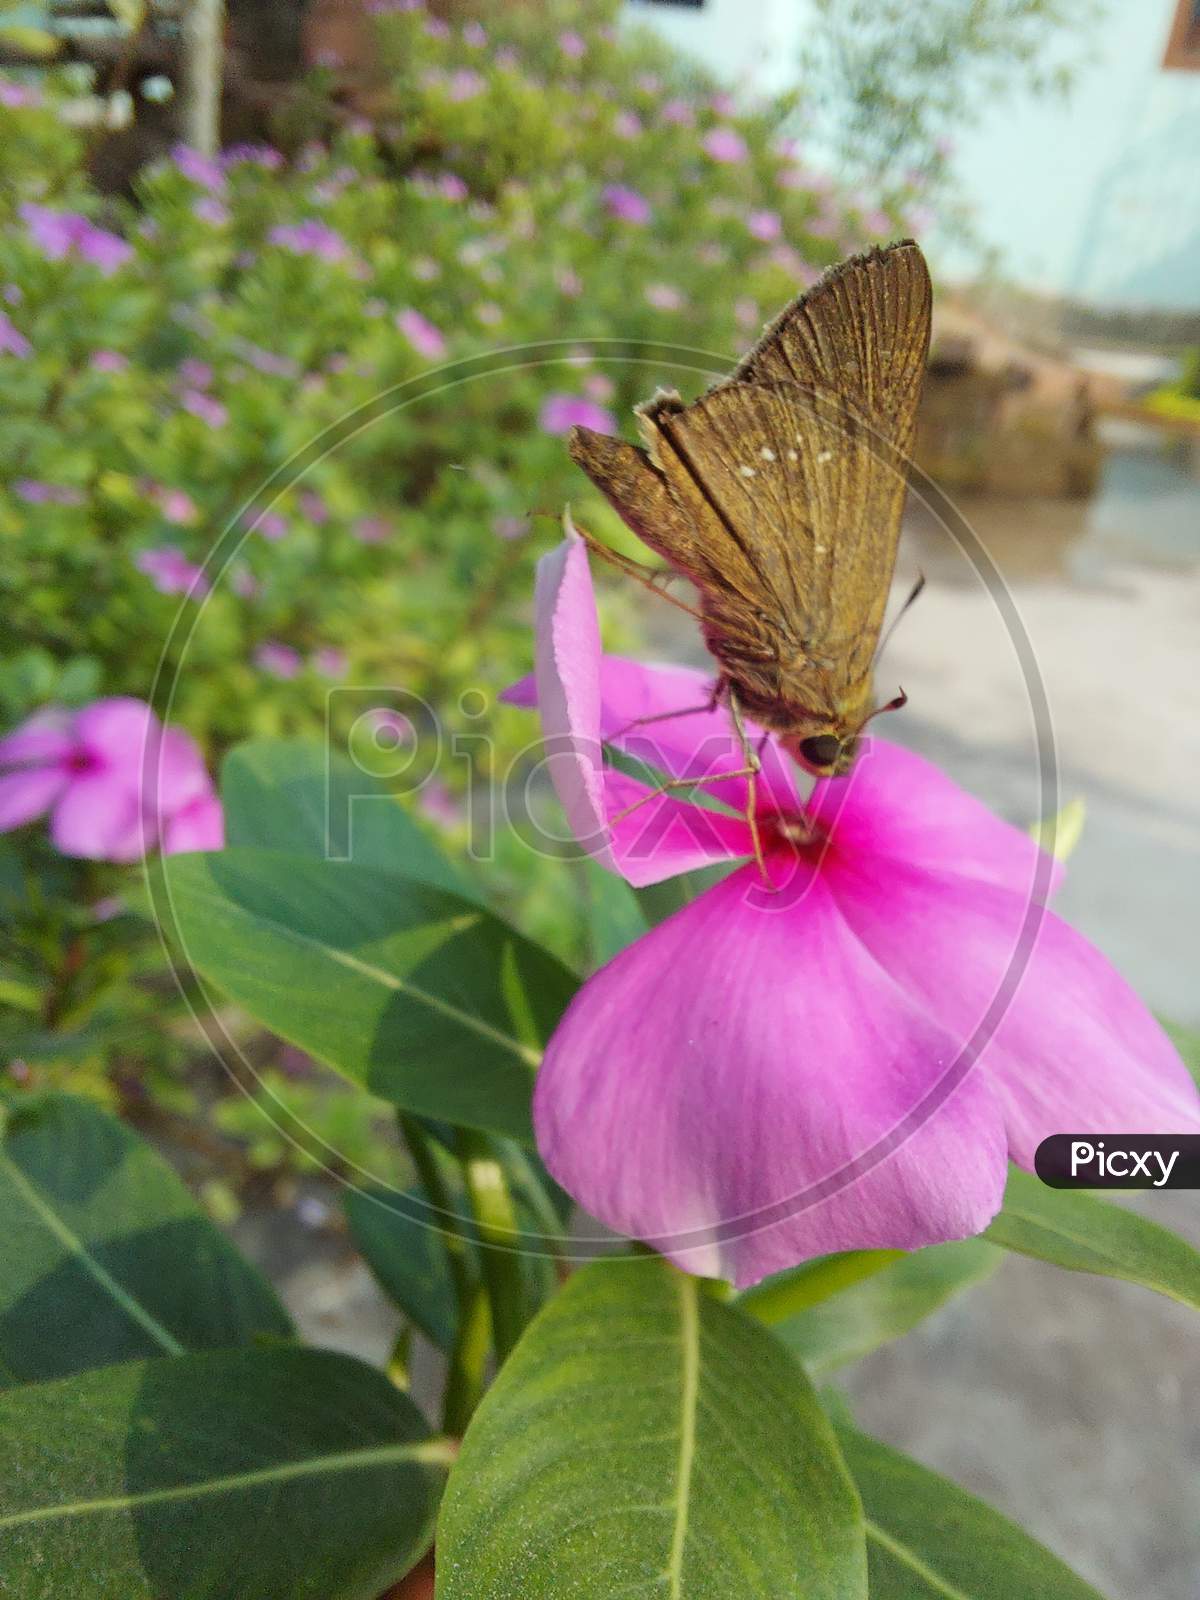 Butterflie on Flower